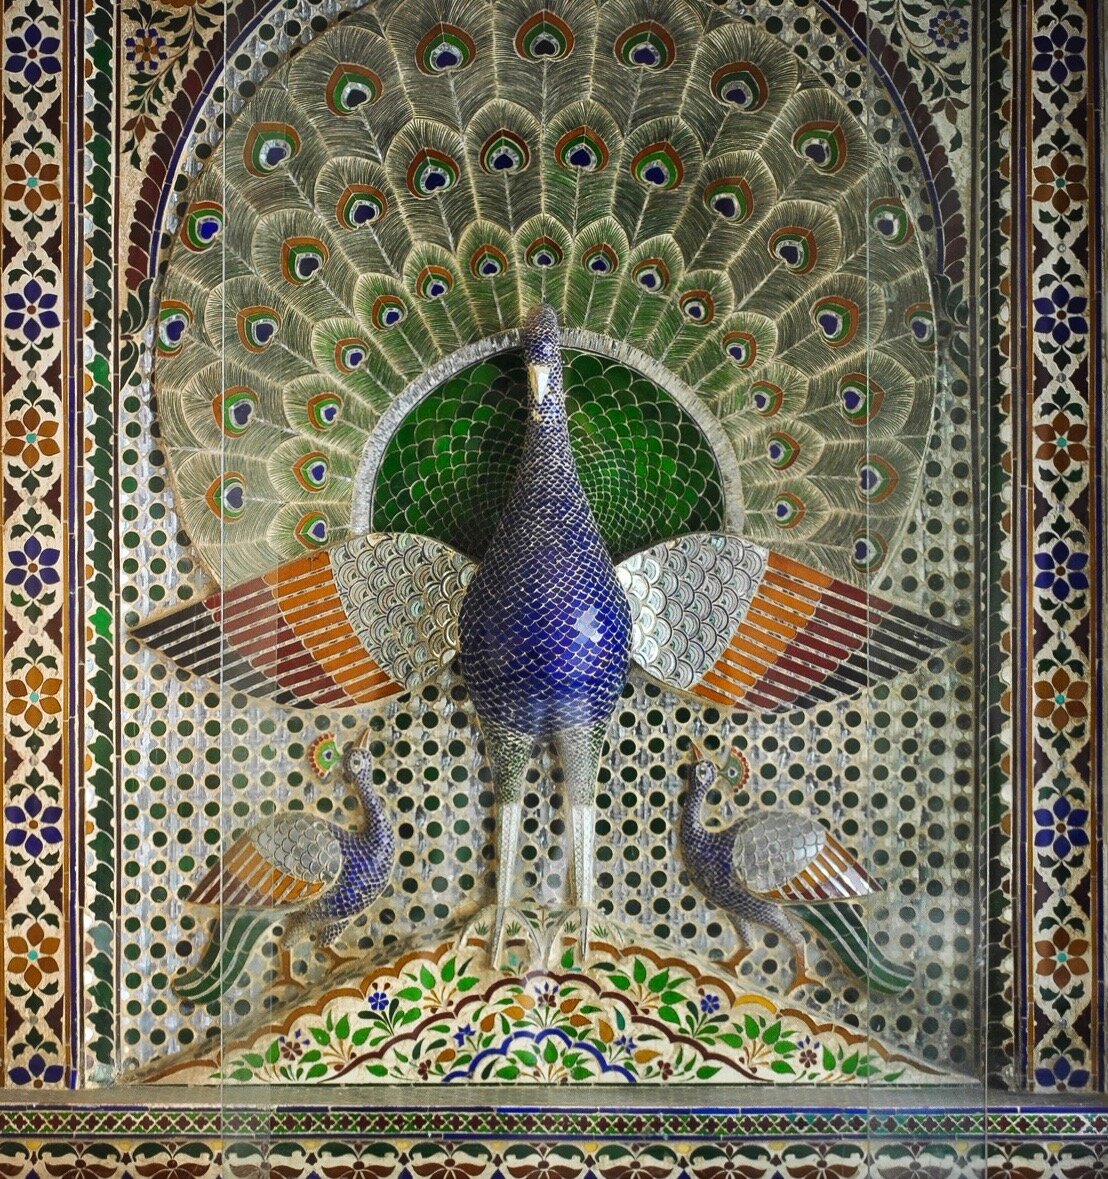 Peacock_mosaic_at_Mor_Chowk,_Udaipur_City_palace,_Rajasthan.jpeg